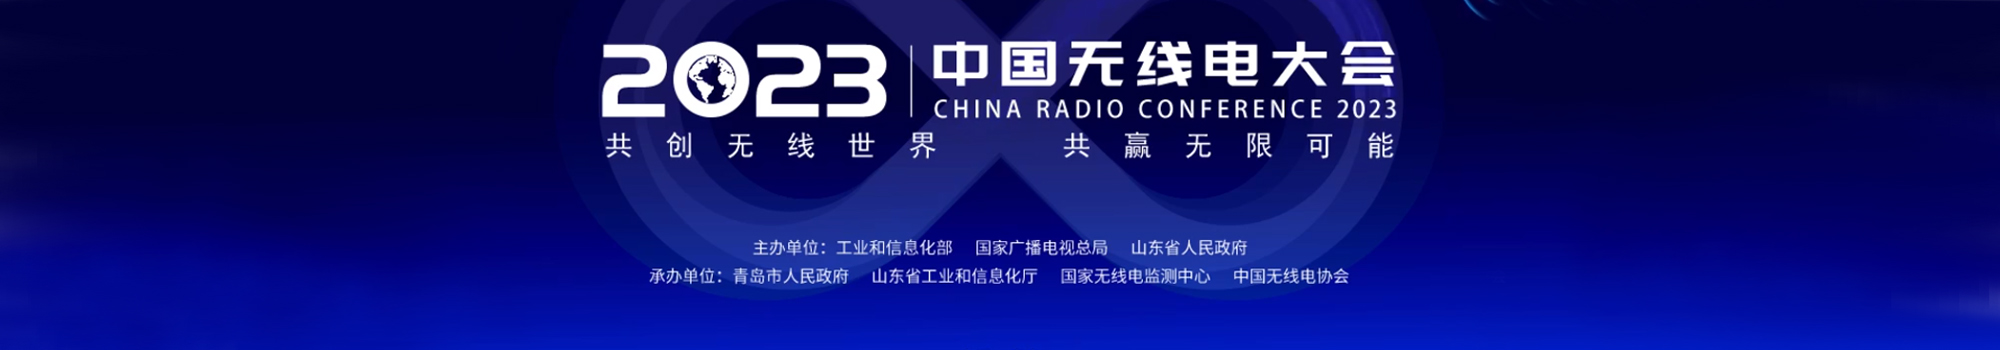 2023中国无线电大会